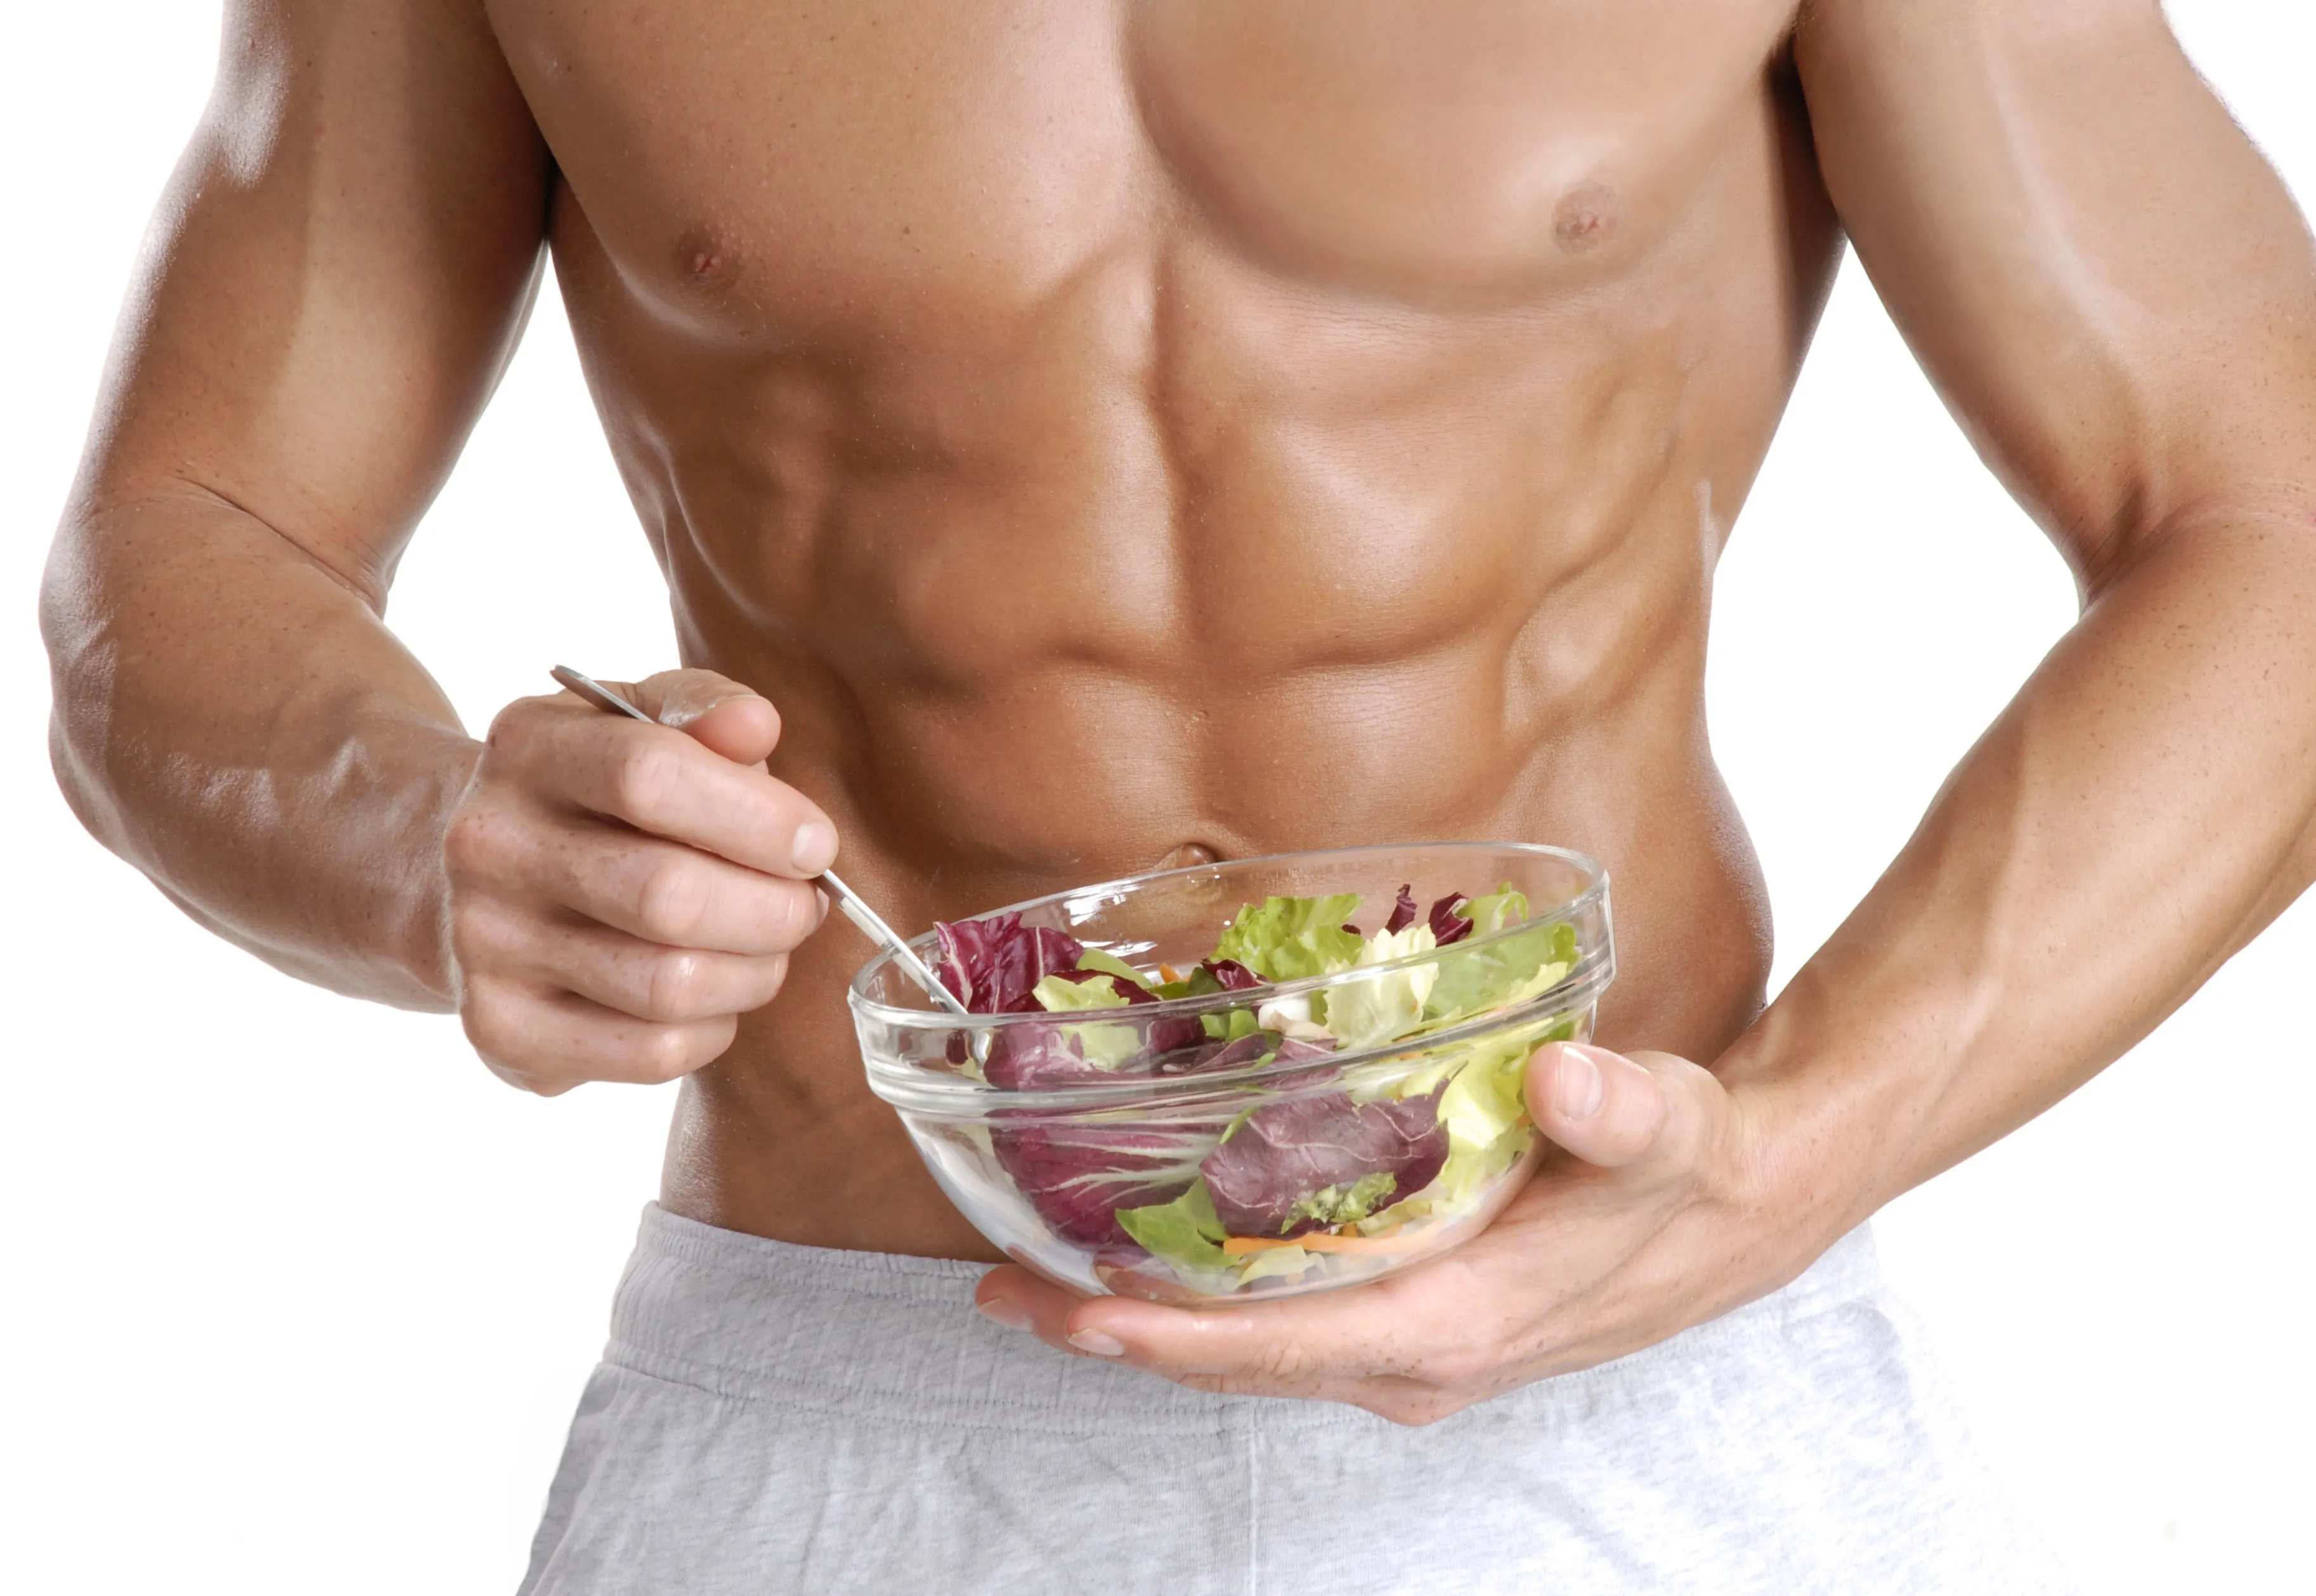 Как быстро похудеть мужчине в домашних условиях: эффективные диеты и упражнения